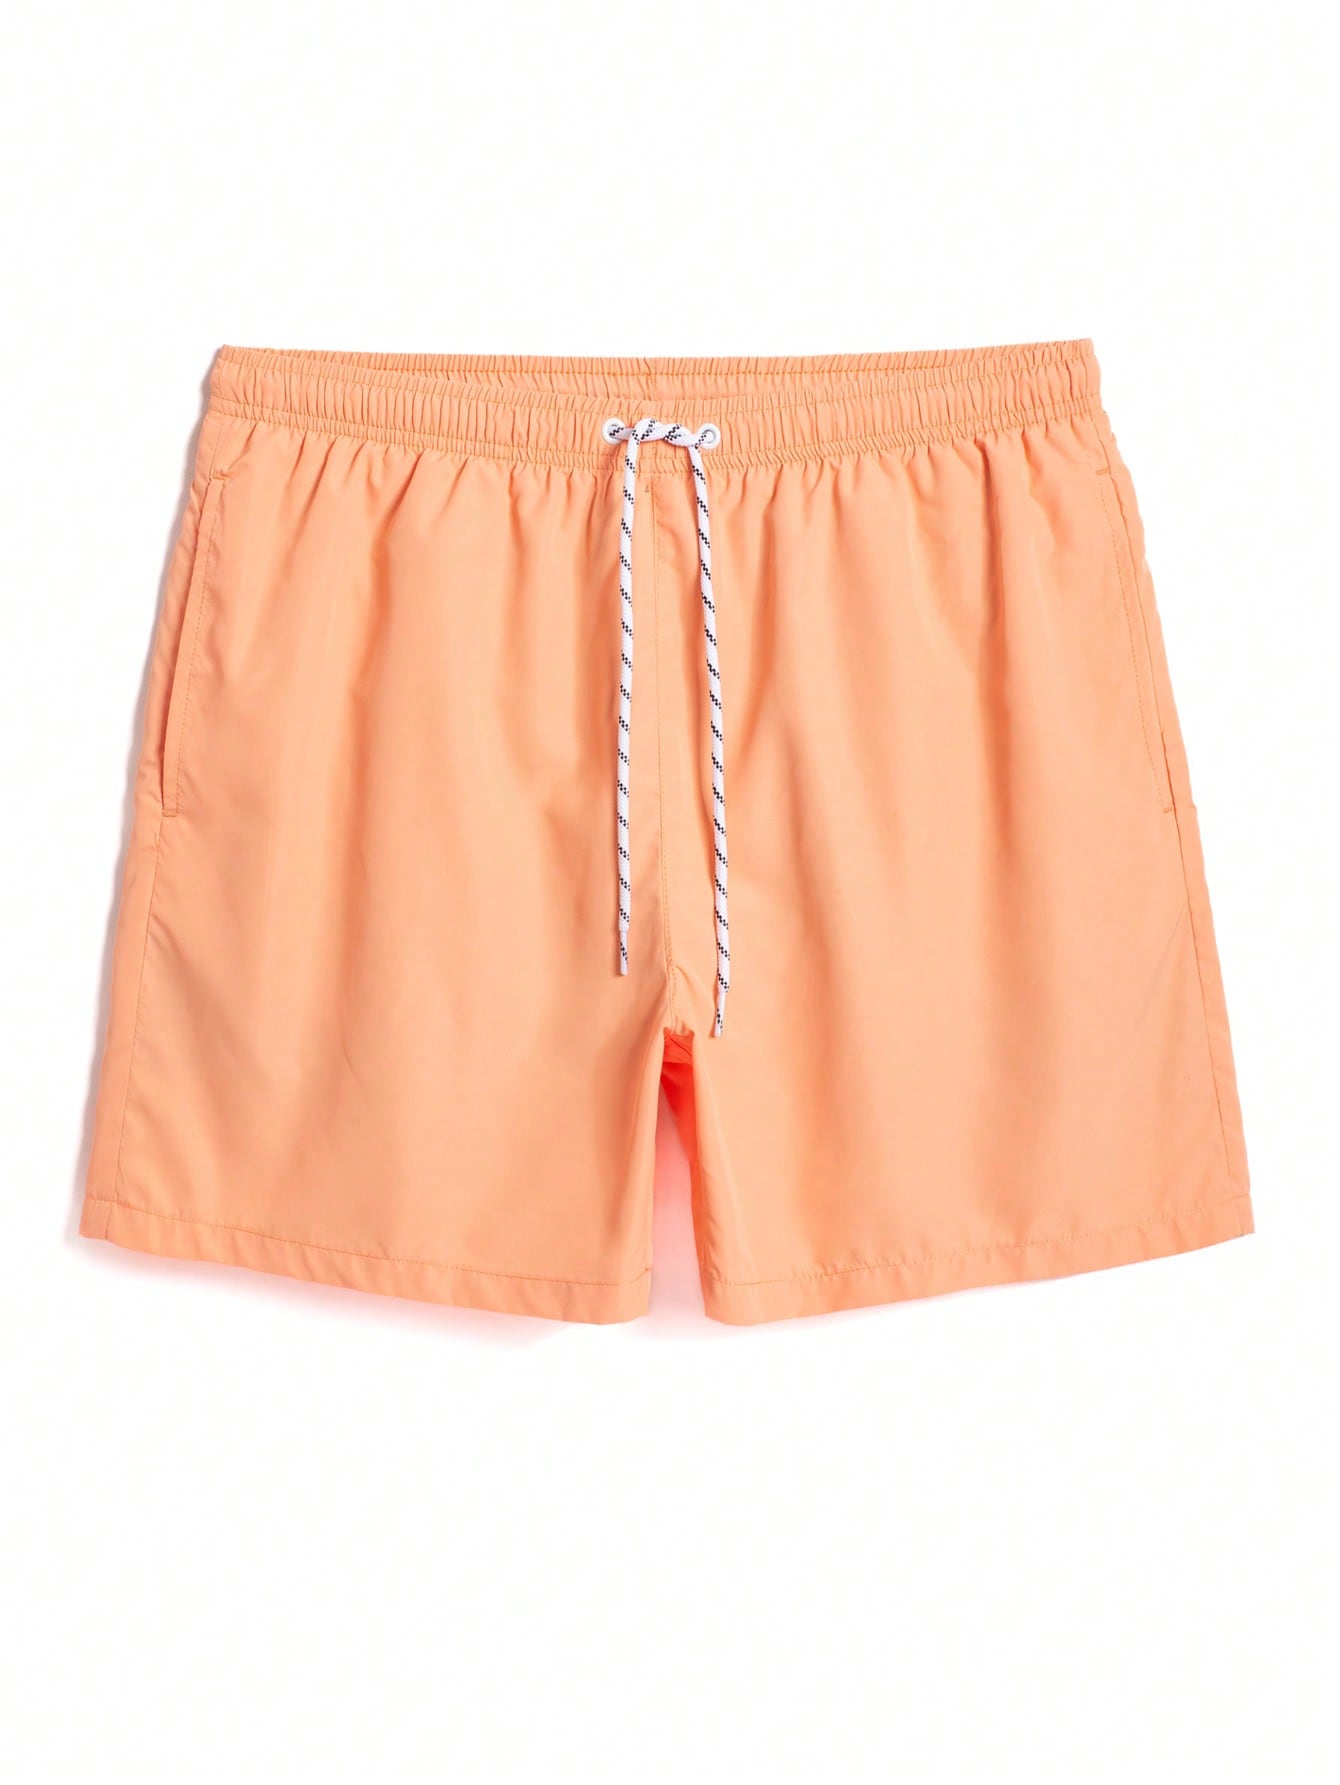 Мужские однотонные пляжные шорты с завязками на талии Manfinity, коралловый оранжевый